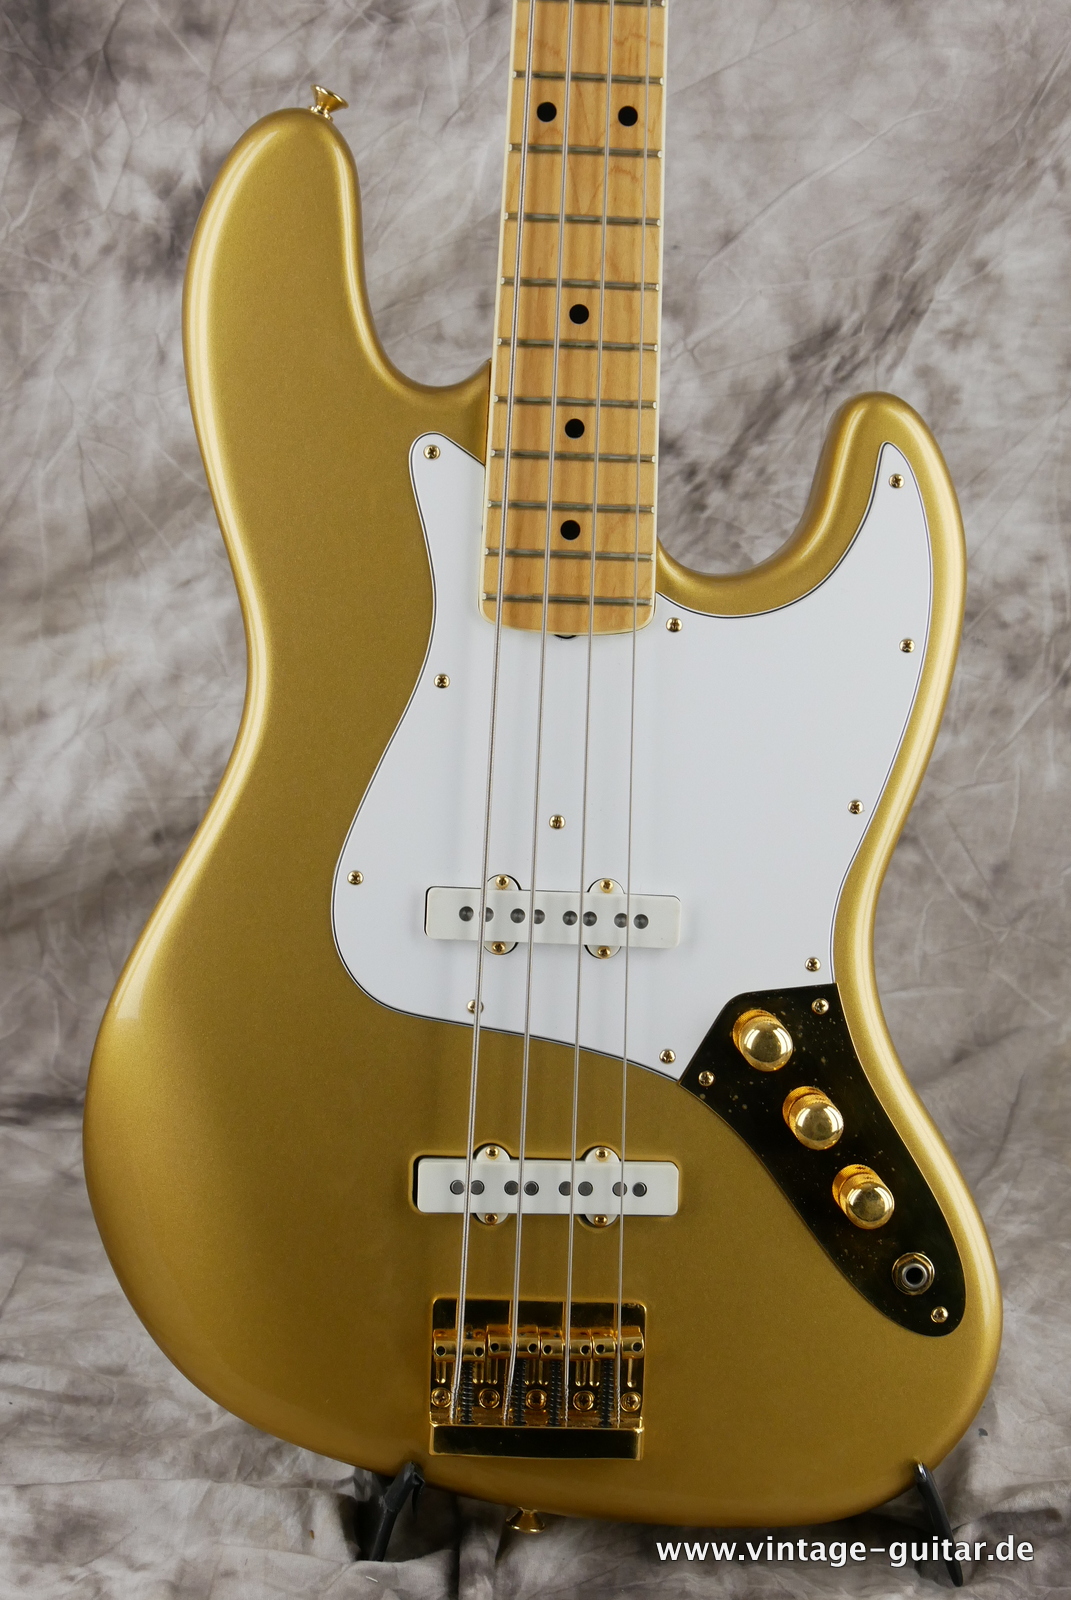 Fender_Jazz_Bass_collectors_series_USA_gold_metallic_1982-003.JPG